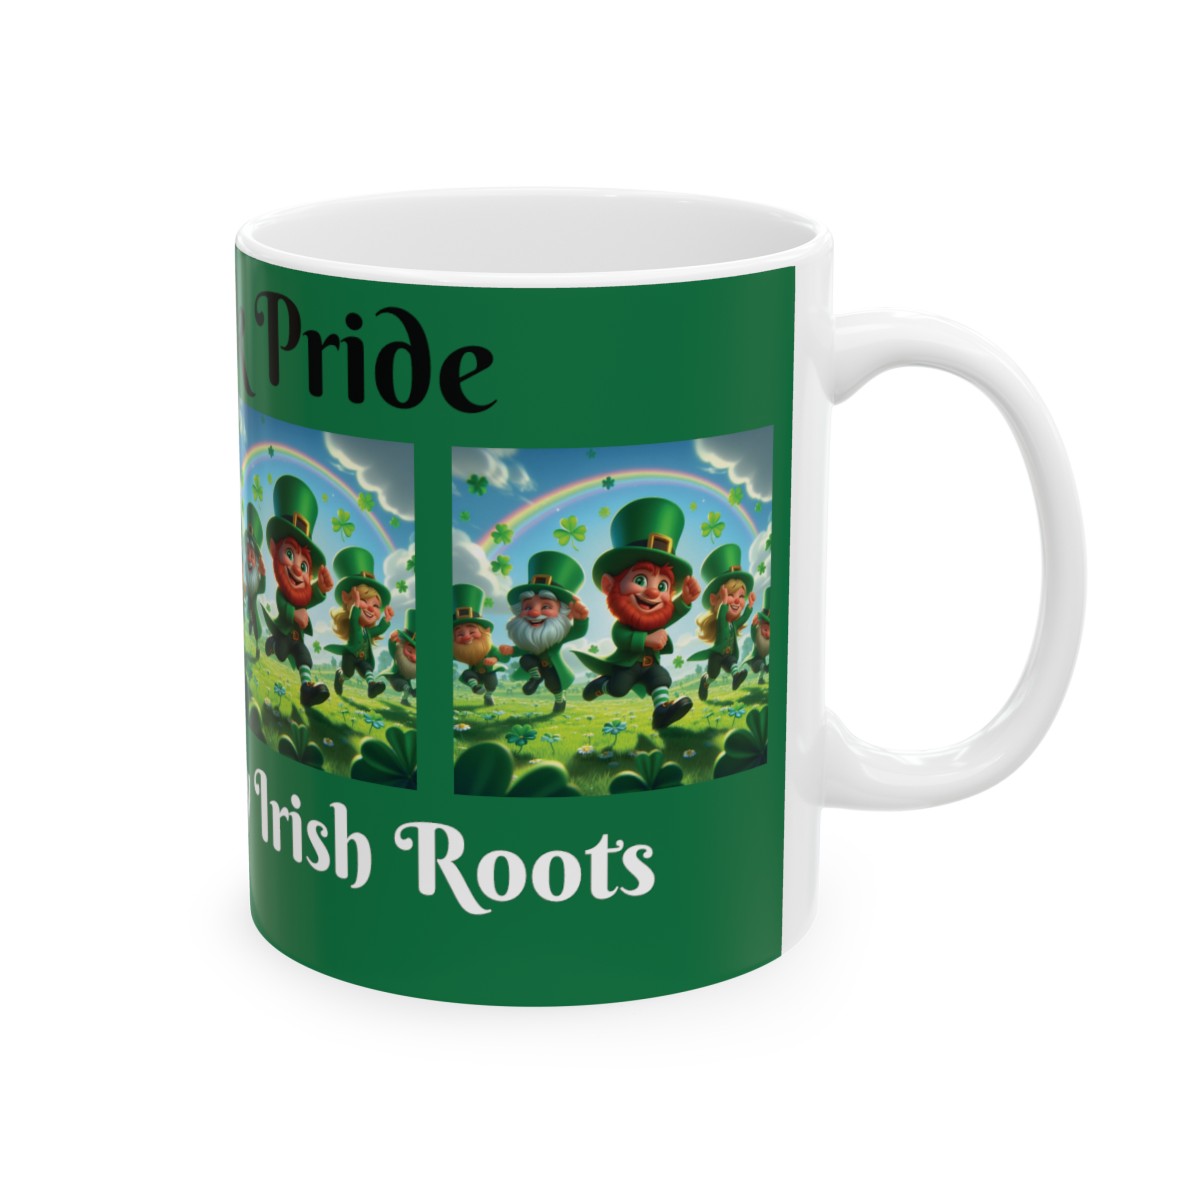 Irish Genealogy Gift - Shamrock Pride: Celebrating My Irish Roots - Ceramic Genealogy Mug 11oz for Genealogists Family History product thumbnail image